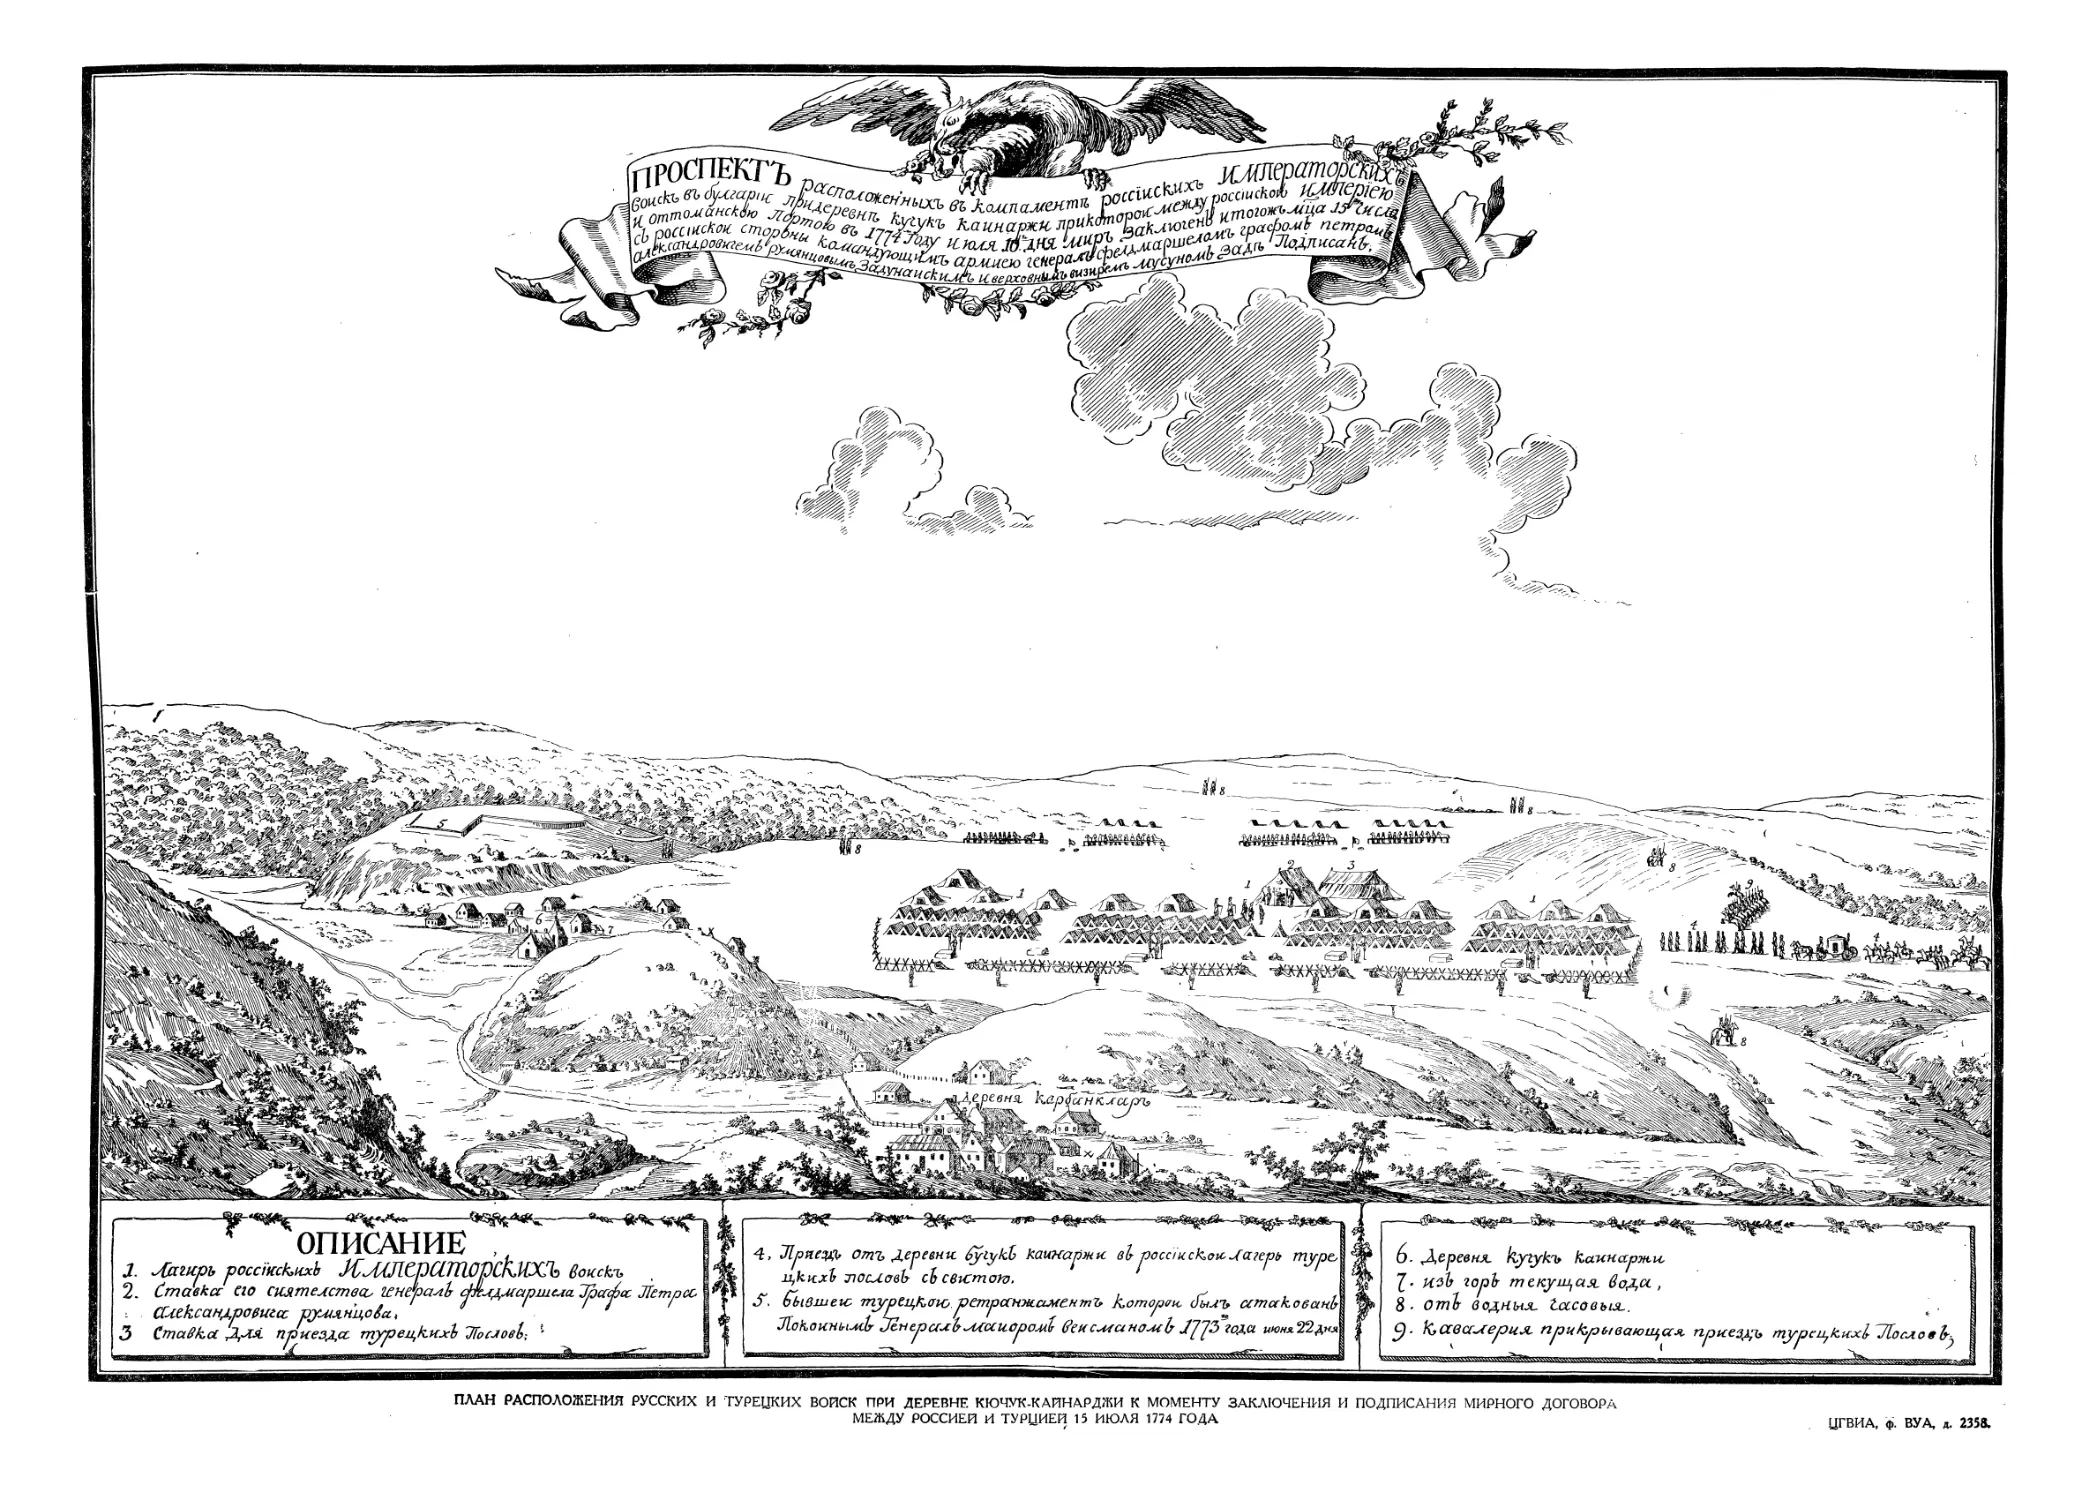 План расположения русских и турецких войск при деревне Качук-Кайнарджи к моменту заключения и подписания мирного договора между Россией и Турцией 15 июля 1774 года